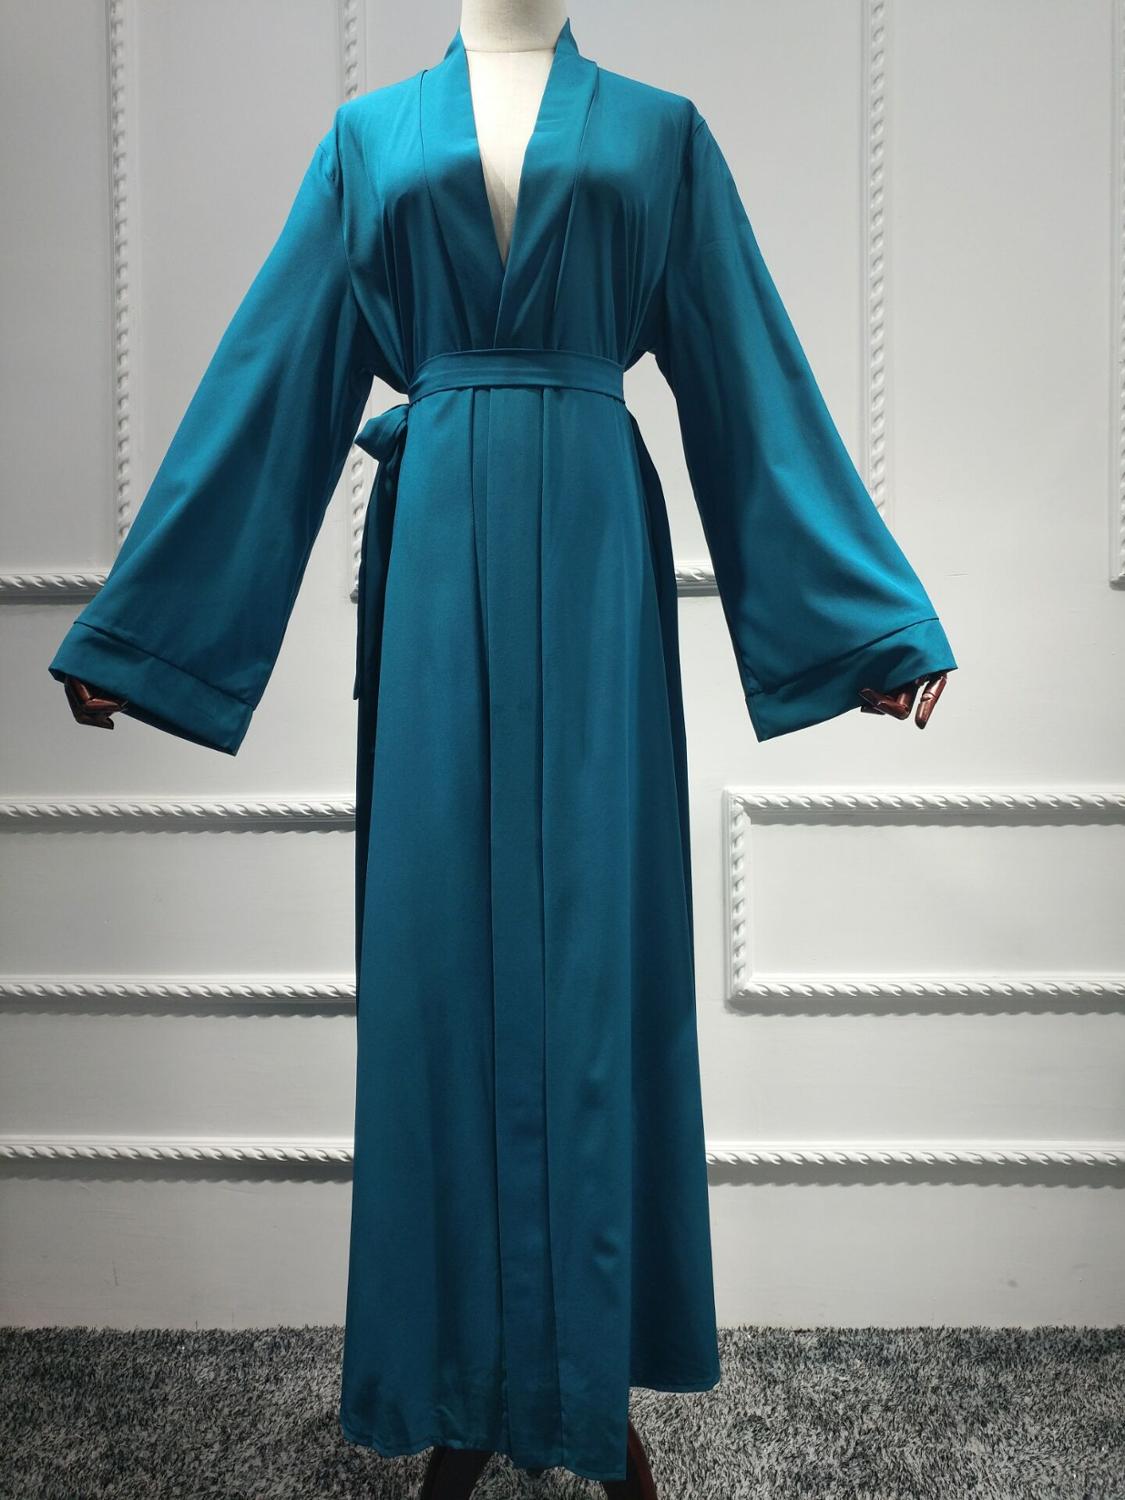 Plain Kimono Cardigan Turkey Muslim Dress Abayas